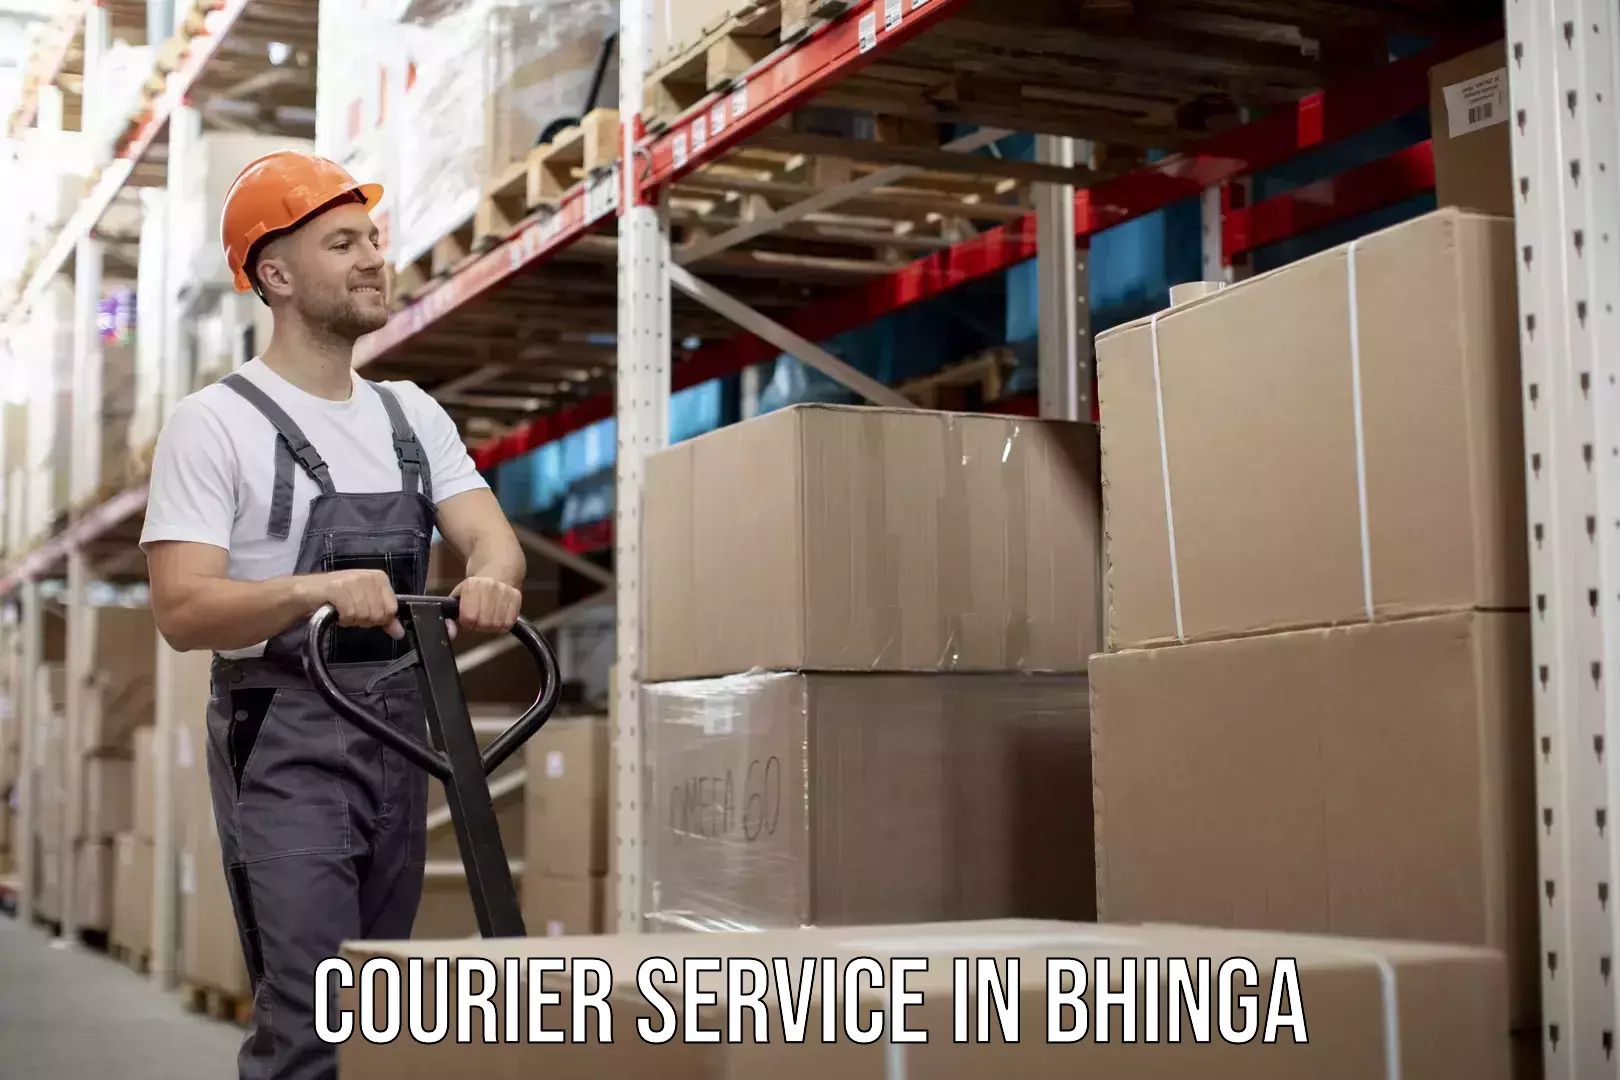 Efficient parcel service in Bhinga